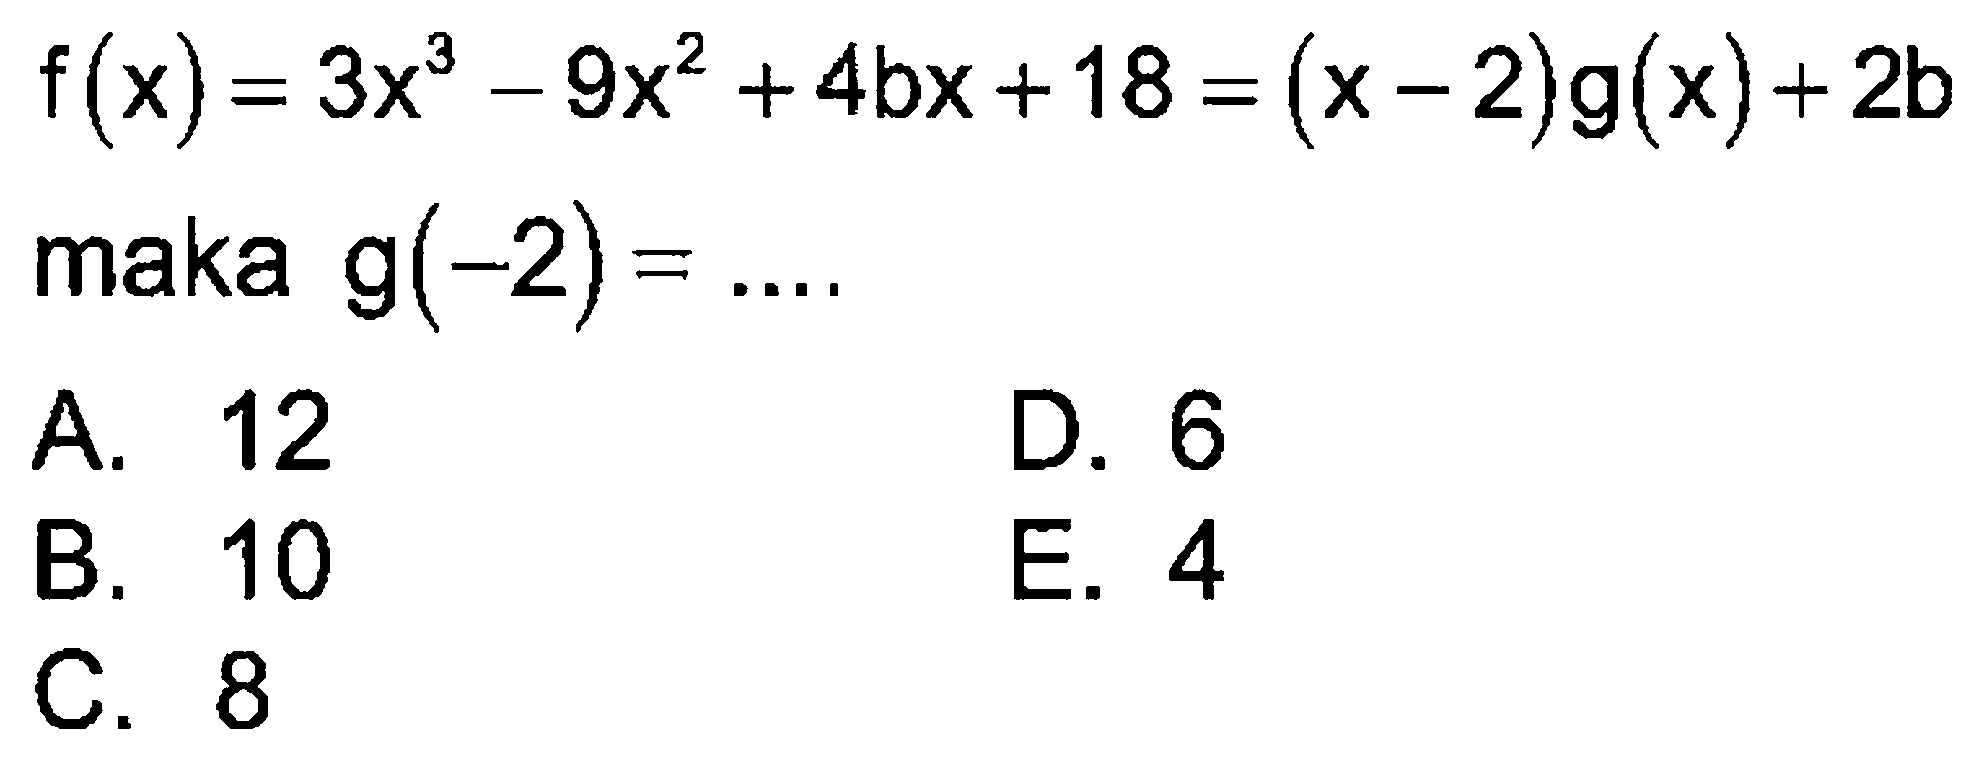 f(x) = 3x^3-9x^2 +4bx+18 =(x- 2)g(x) + 2b maka g(-2)= ...